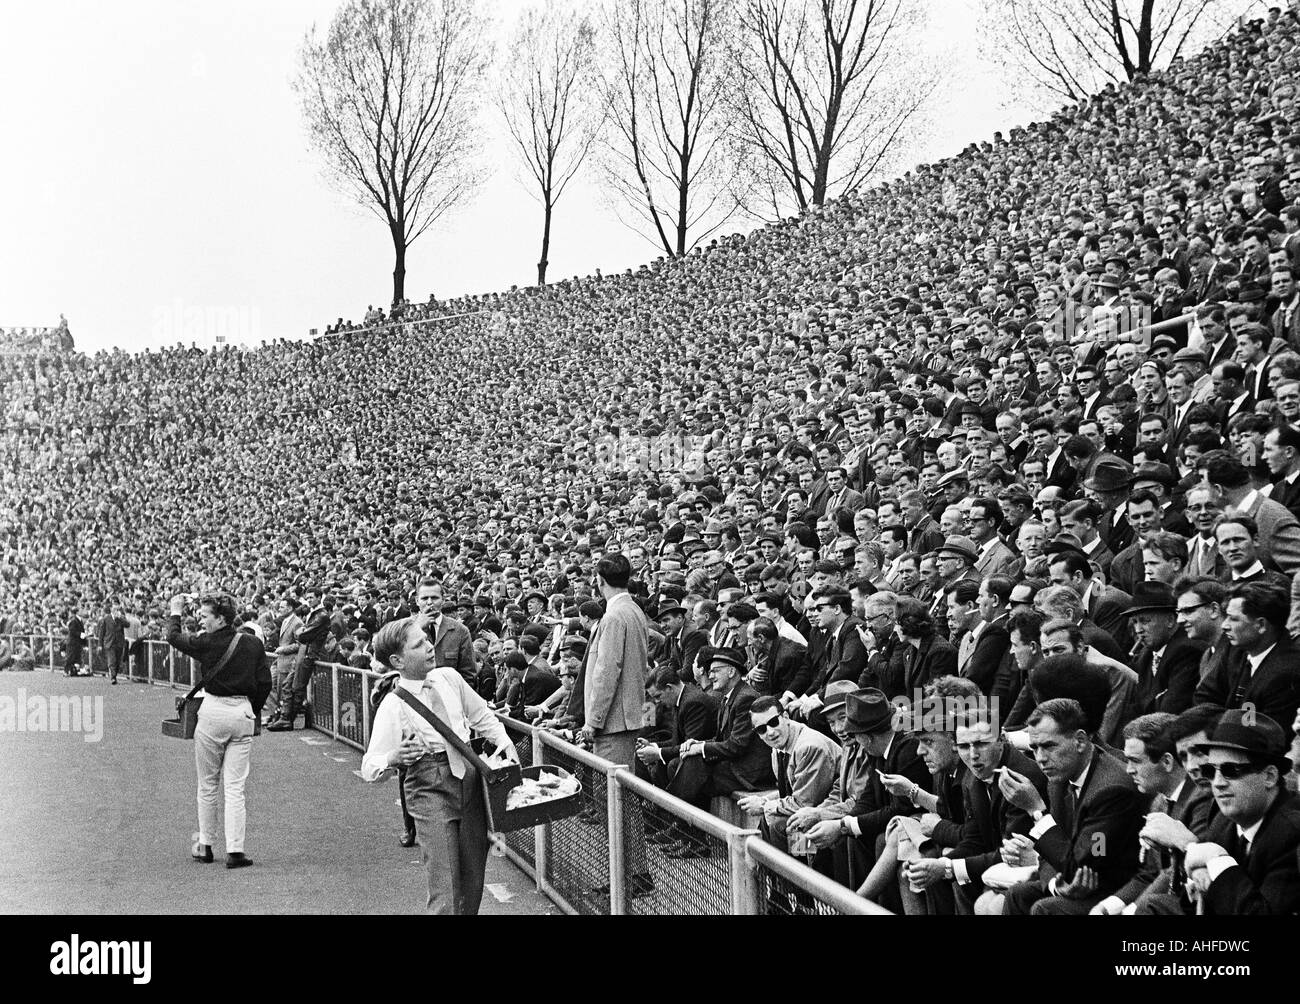 Fußball, Regionalliga West 1964/1965, Borussia Mönchengladbach gegen  Alemannia Aachen 2:0, Boekelberg Stadion, Zuschauer, komplett volle Stadion  Stockfotografie - Alamy